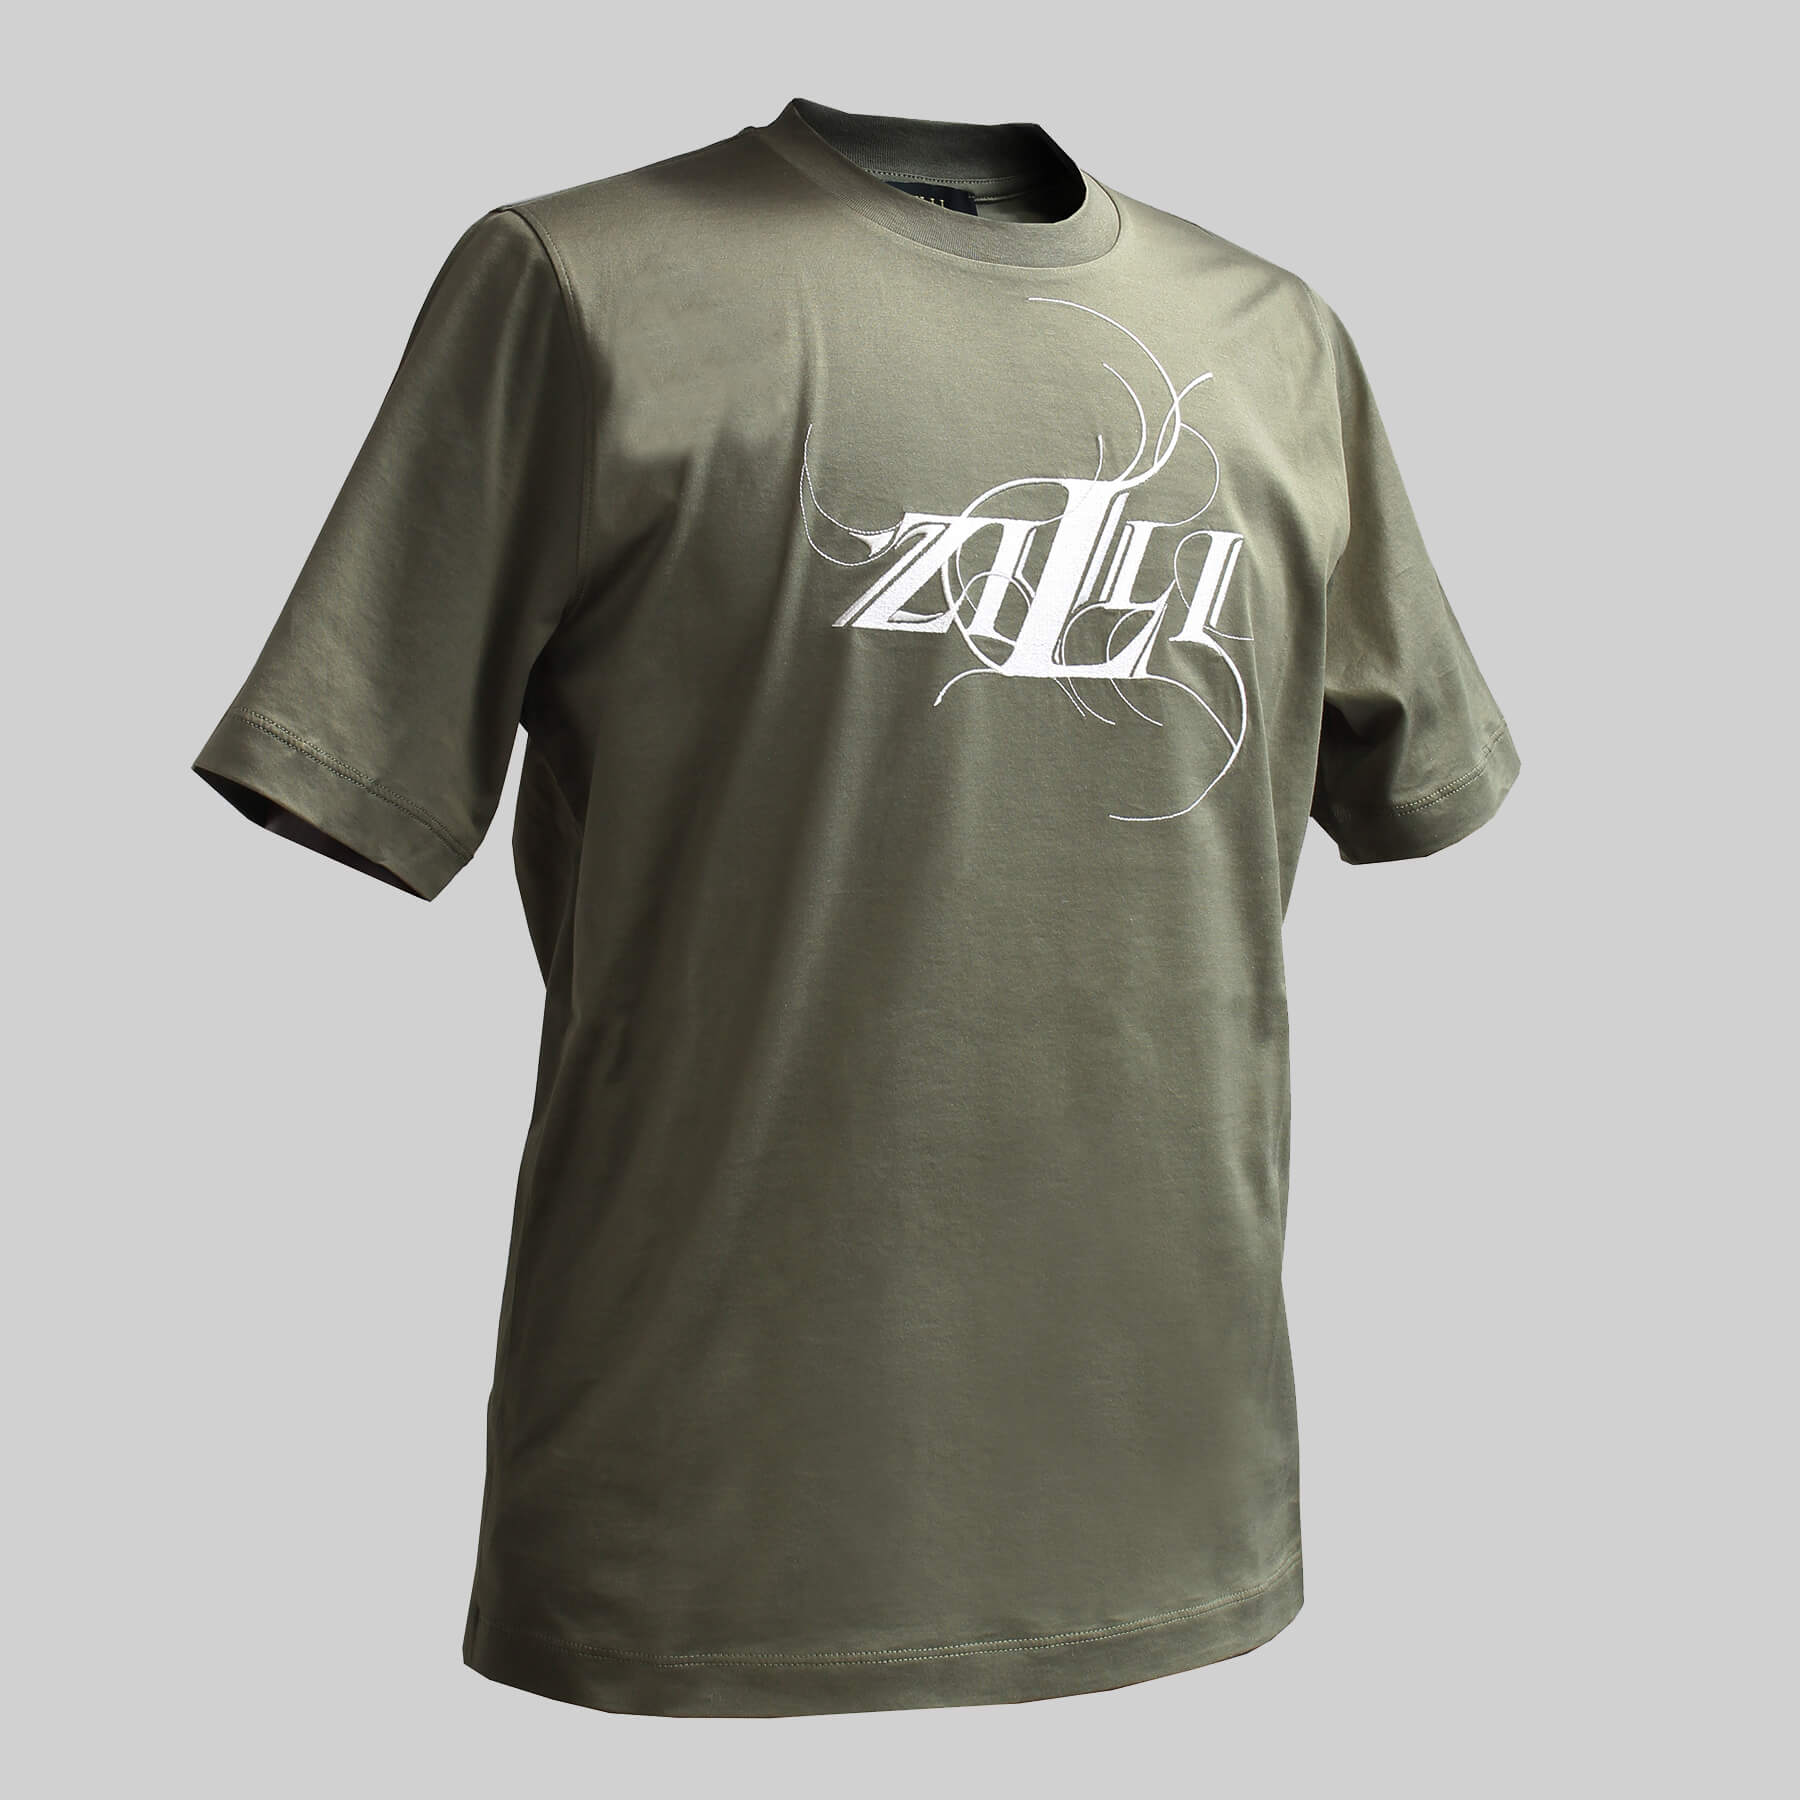 ZILLI (ジリー)Tシャツ シャツ カットソー メンズ ZILLI ジリー コットン 高級 トップス 半袖 刺繍 モスグリーン